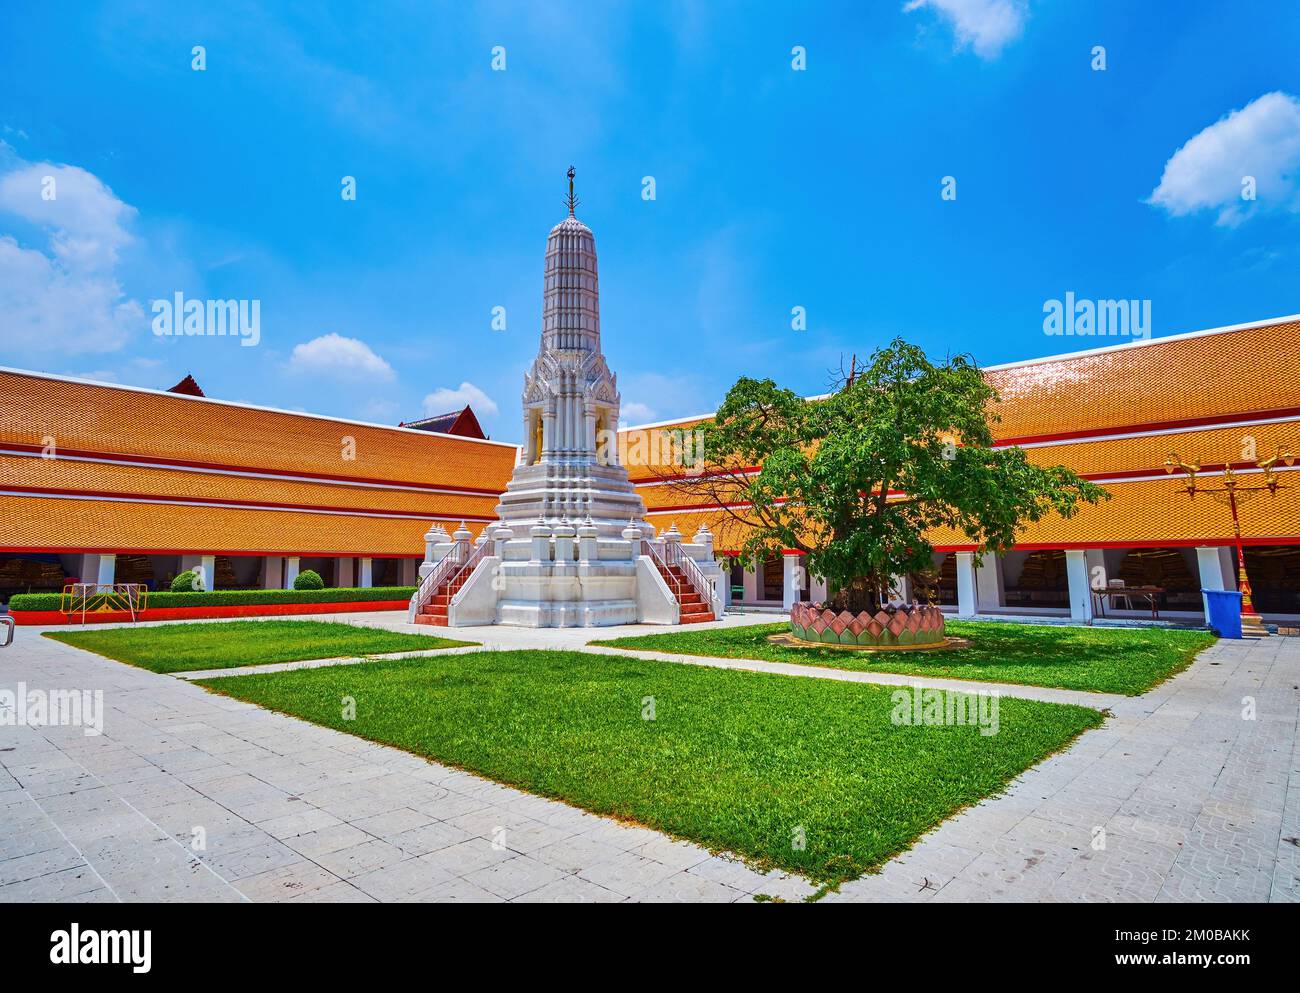 Kleines Kloster des Wat Mahathat Tempels mit kleinem Prang in der Mitte, Bangkok, Thailand Stockfoto